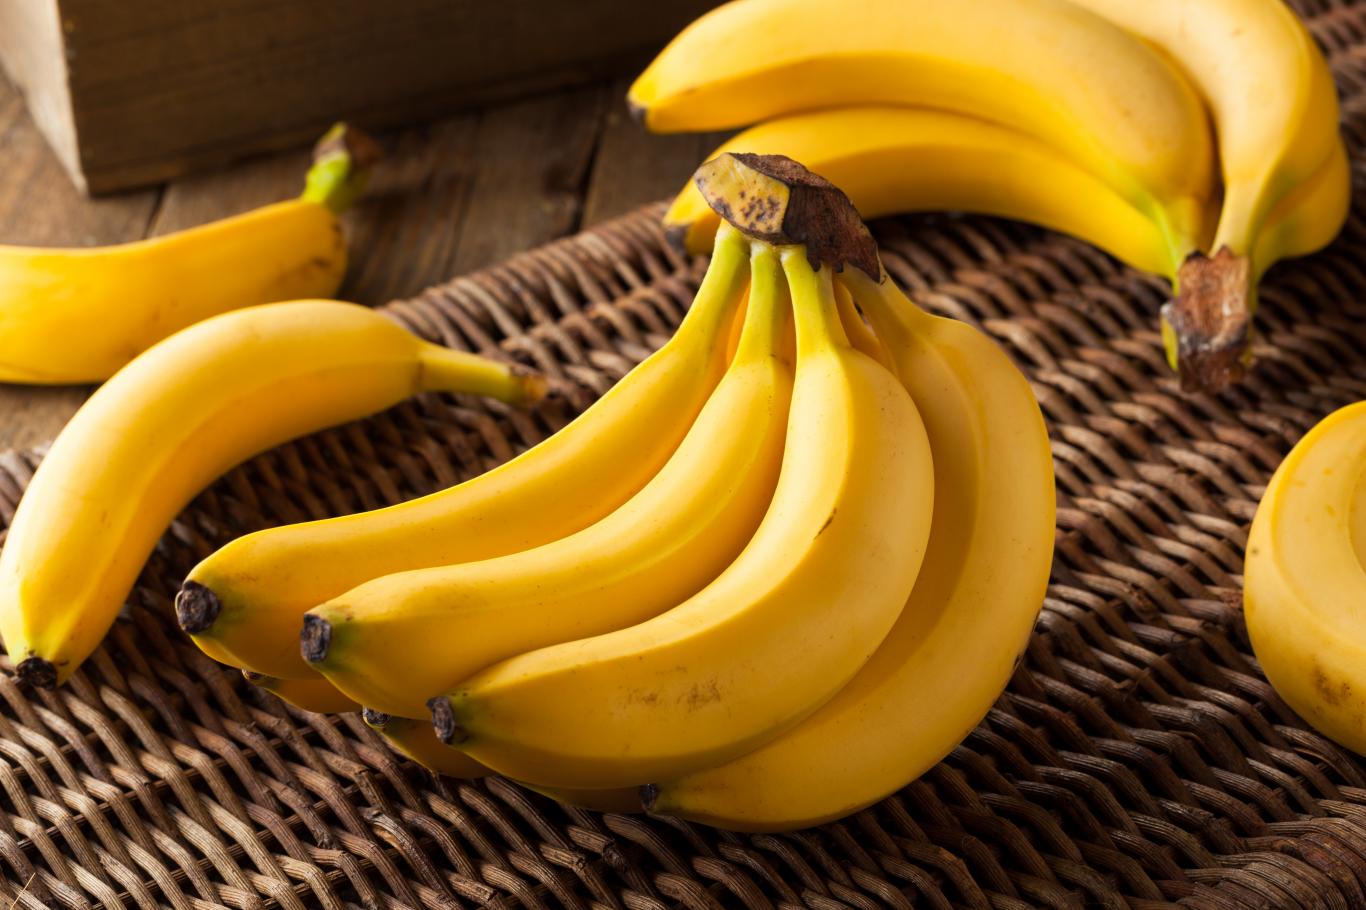 avec cette recette à base de banane, cette diététicienne vous propose un petit-déjeuner équilibré et gourmand !